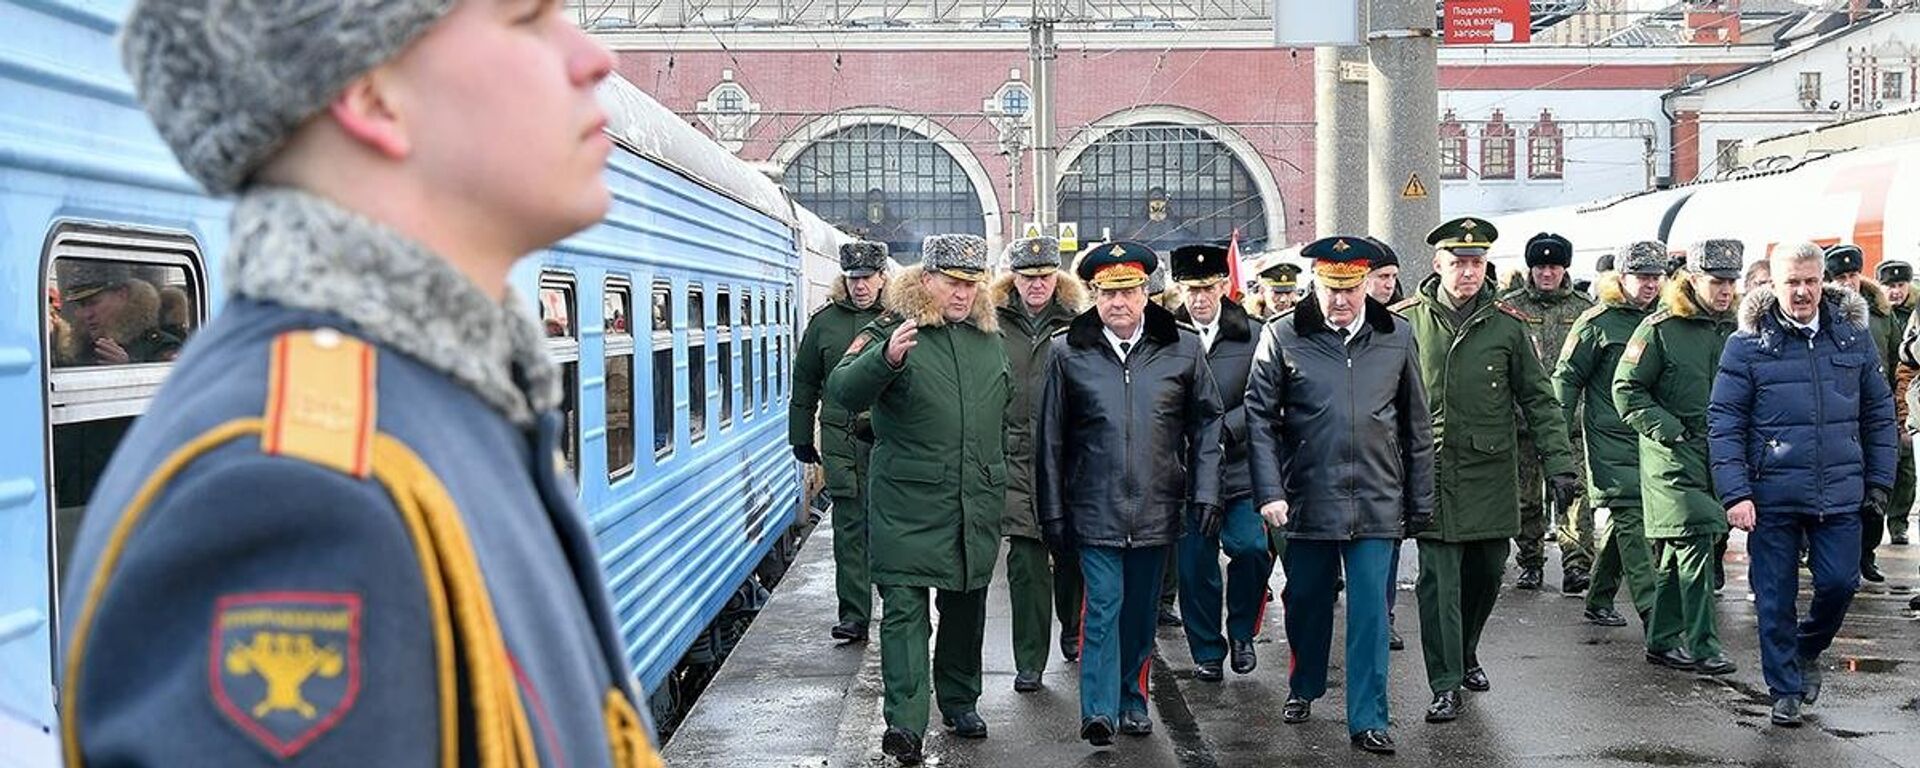 Rus ordusu, Suriye'de ele geçirilen askeri teçhizatı müze trenle Rusya genelinde sergiliyor - Sputnik Türkiye, 1920, 18.02.2022